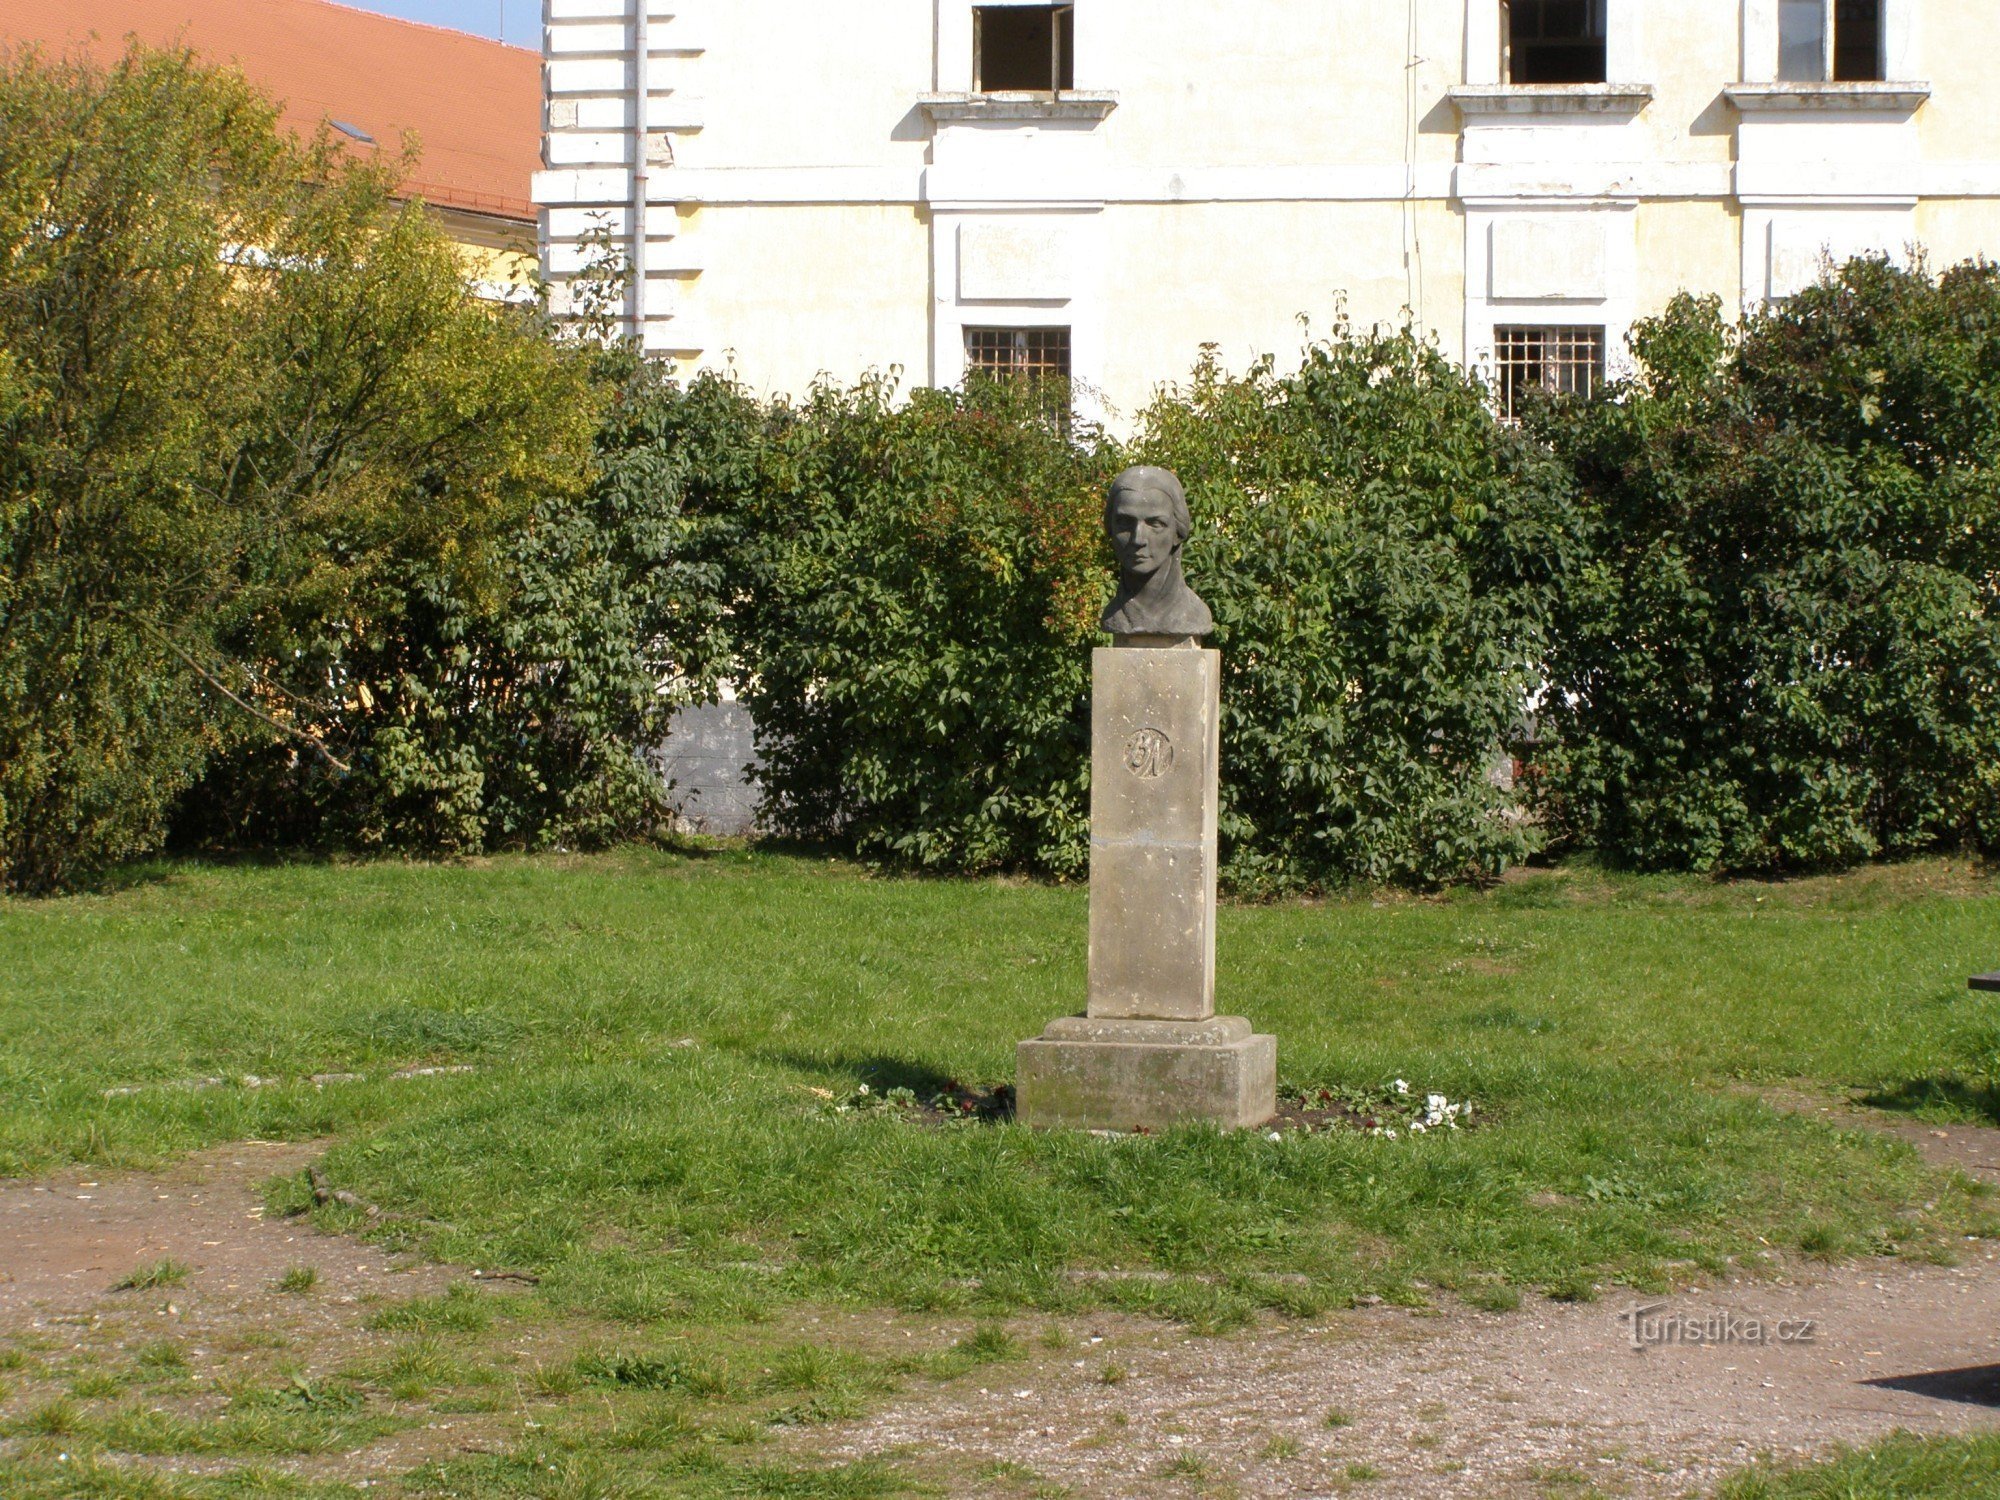 Josefov - monument till Bozena Němcová